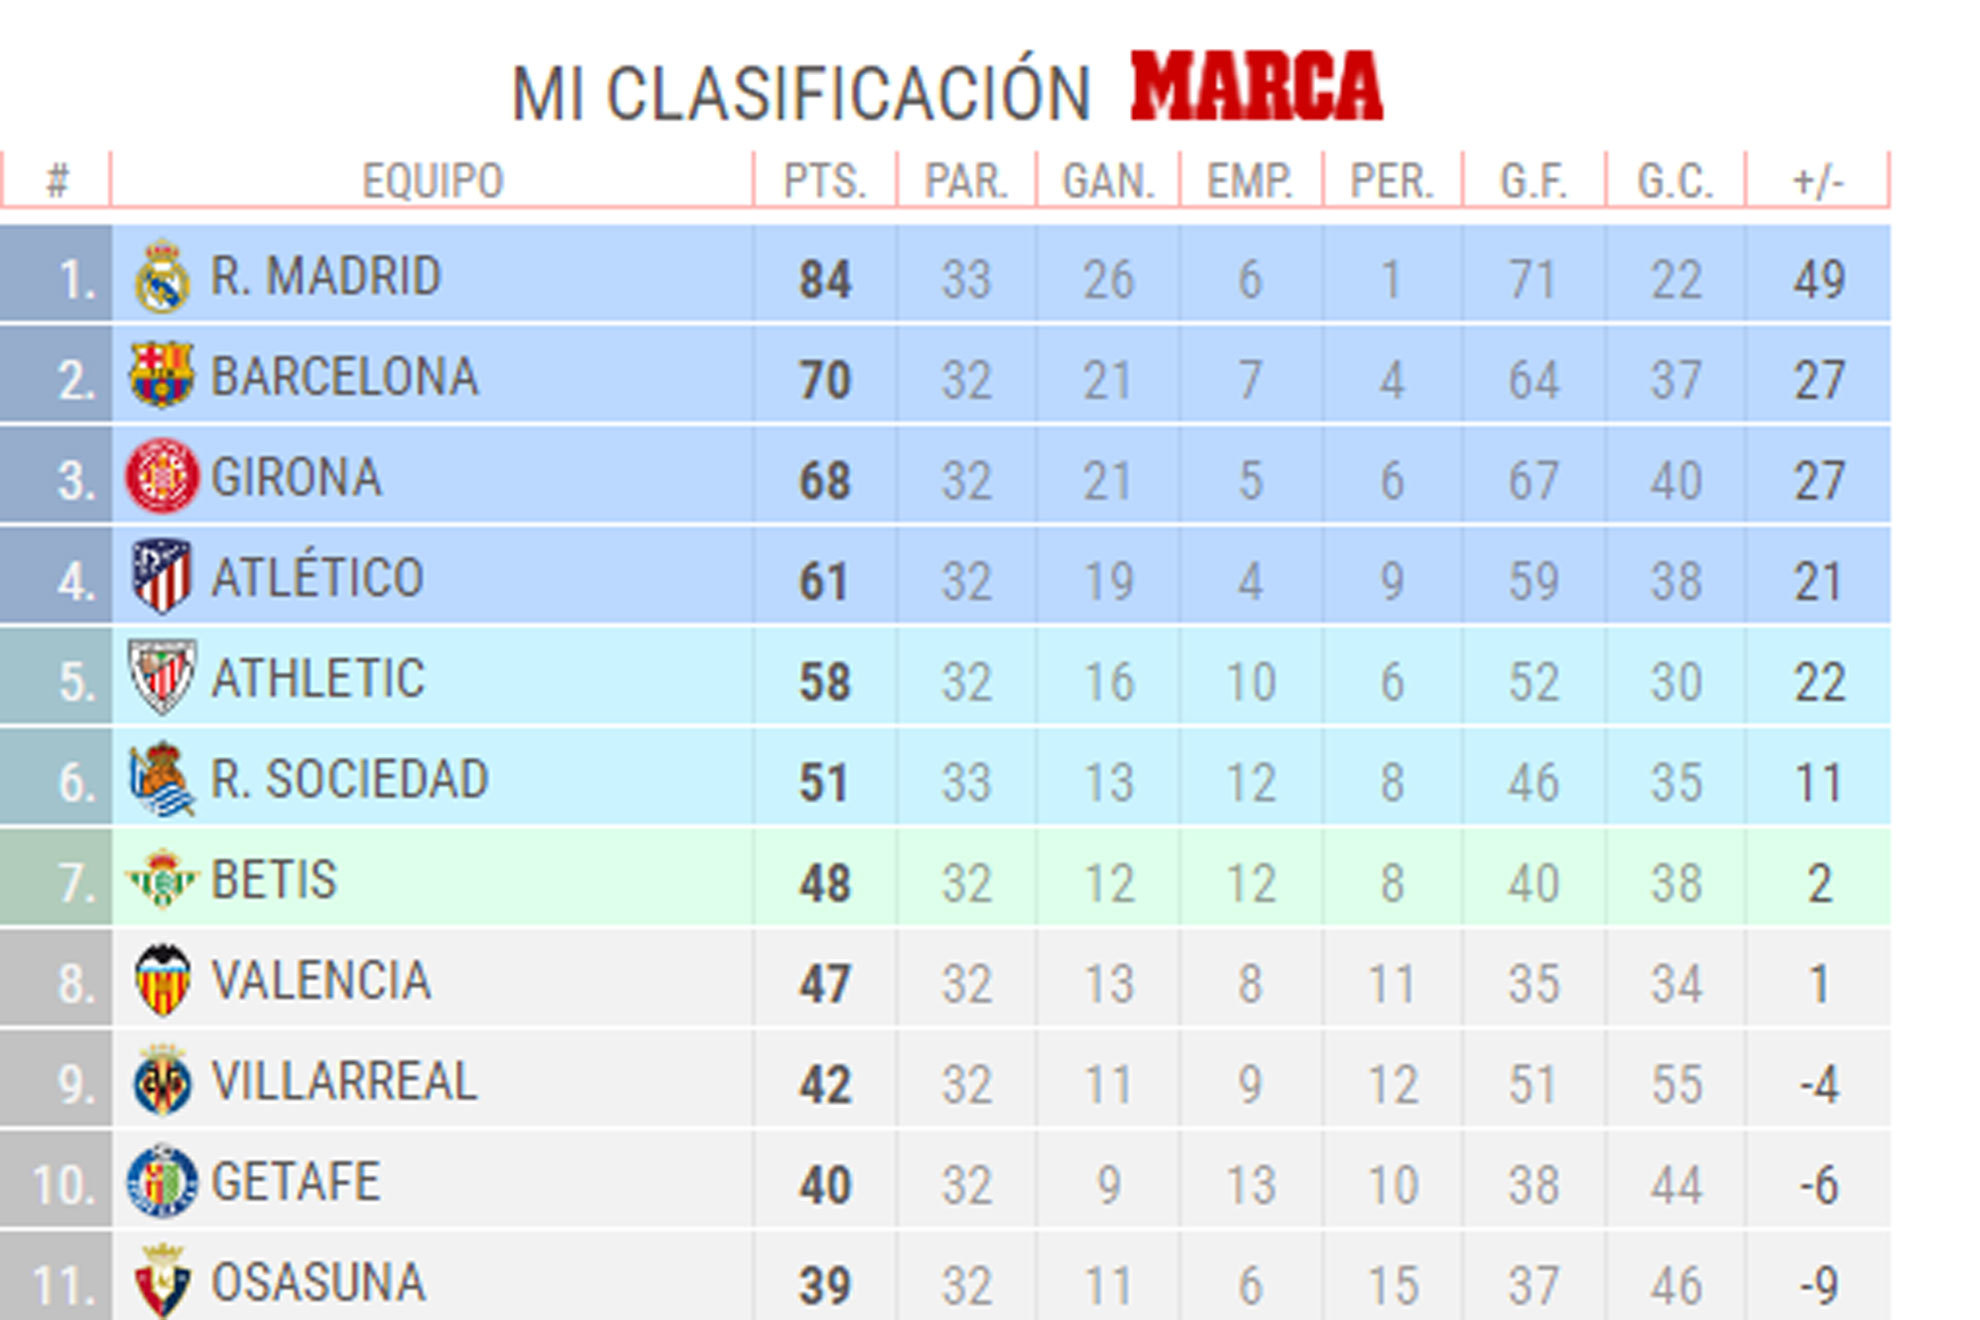 Cuntos puntos necesita el Madrid para ser campen?